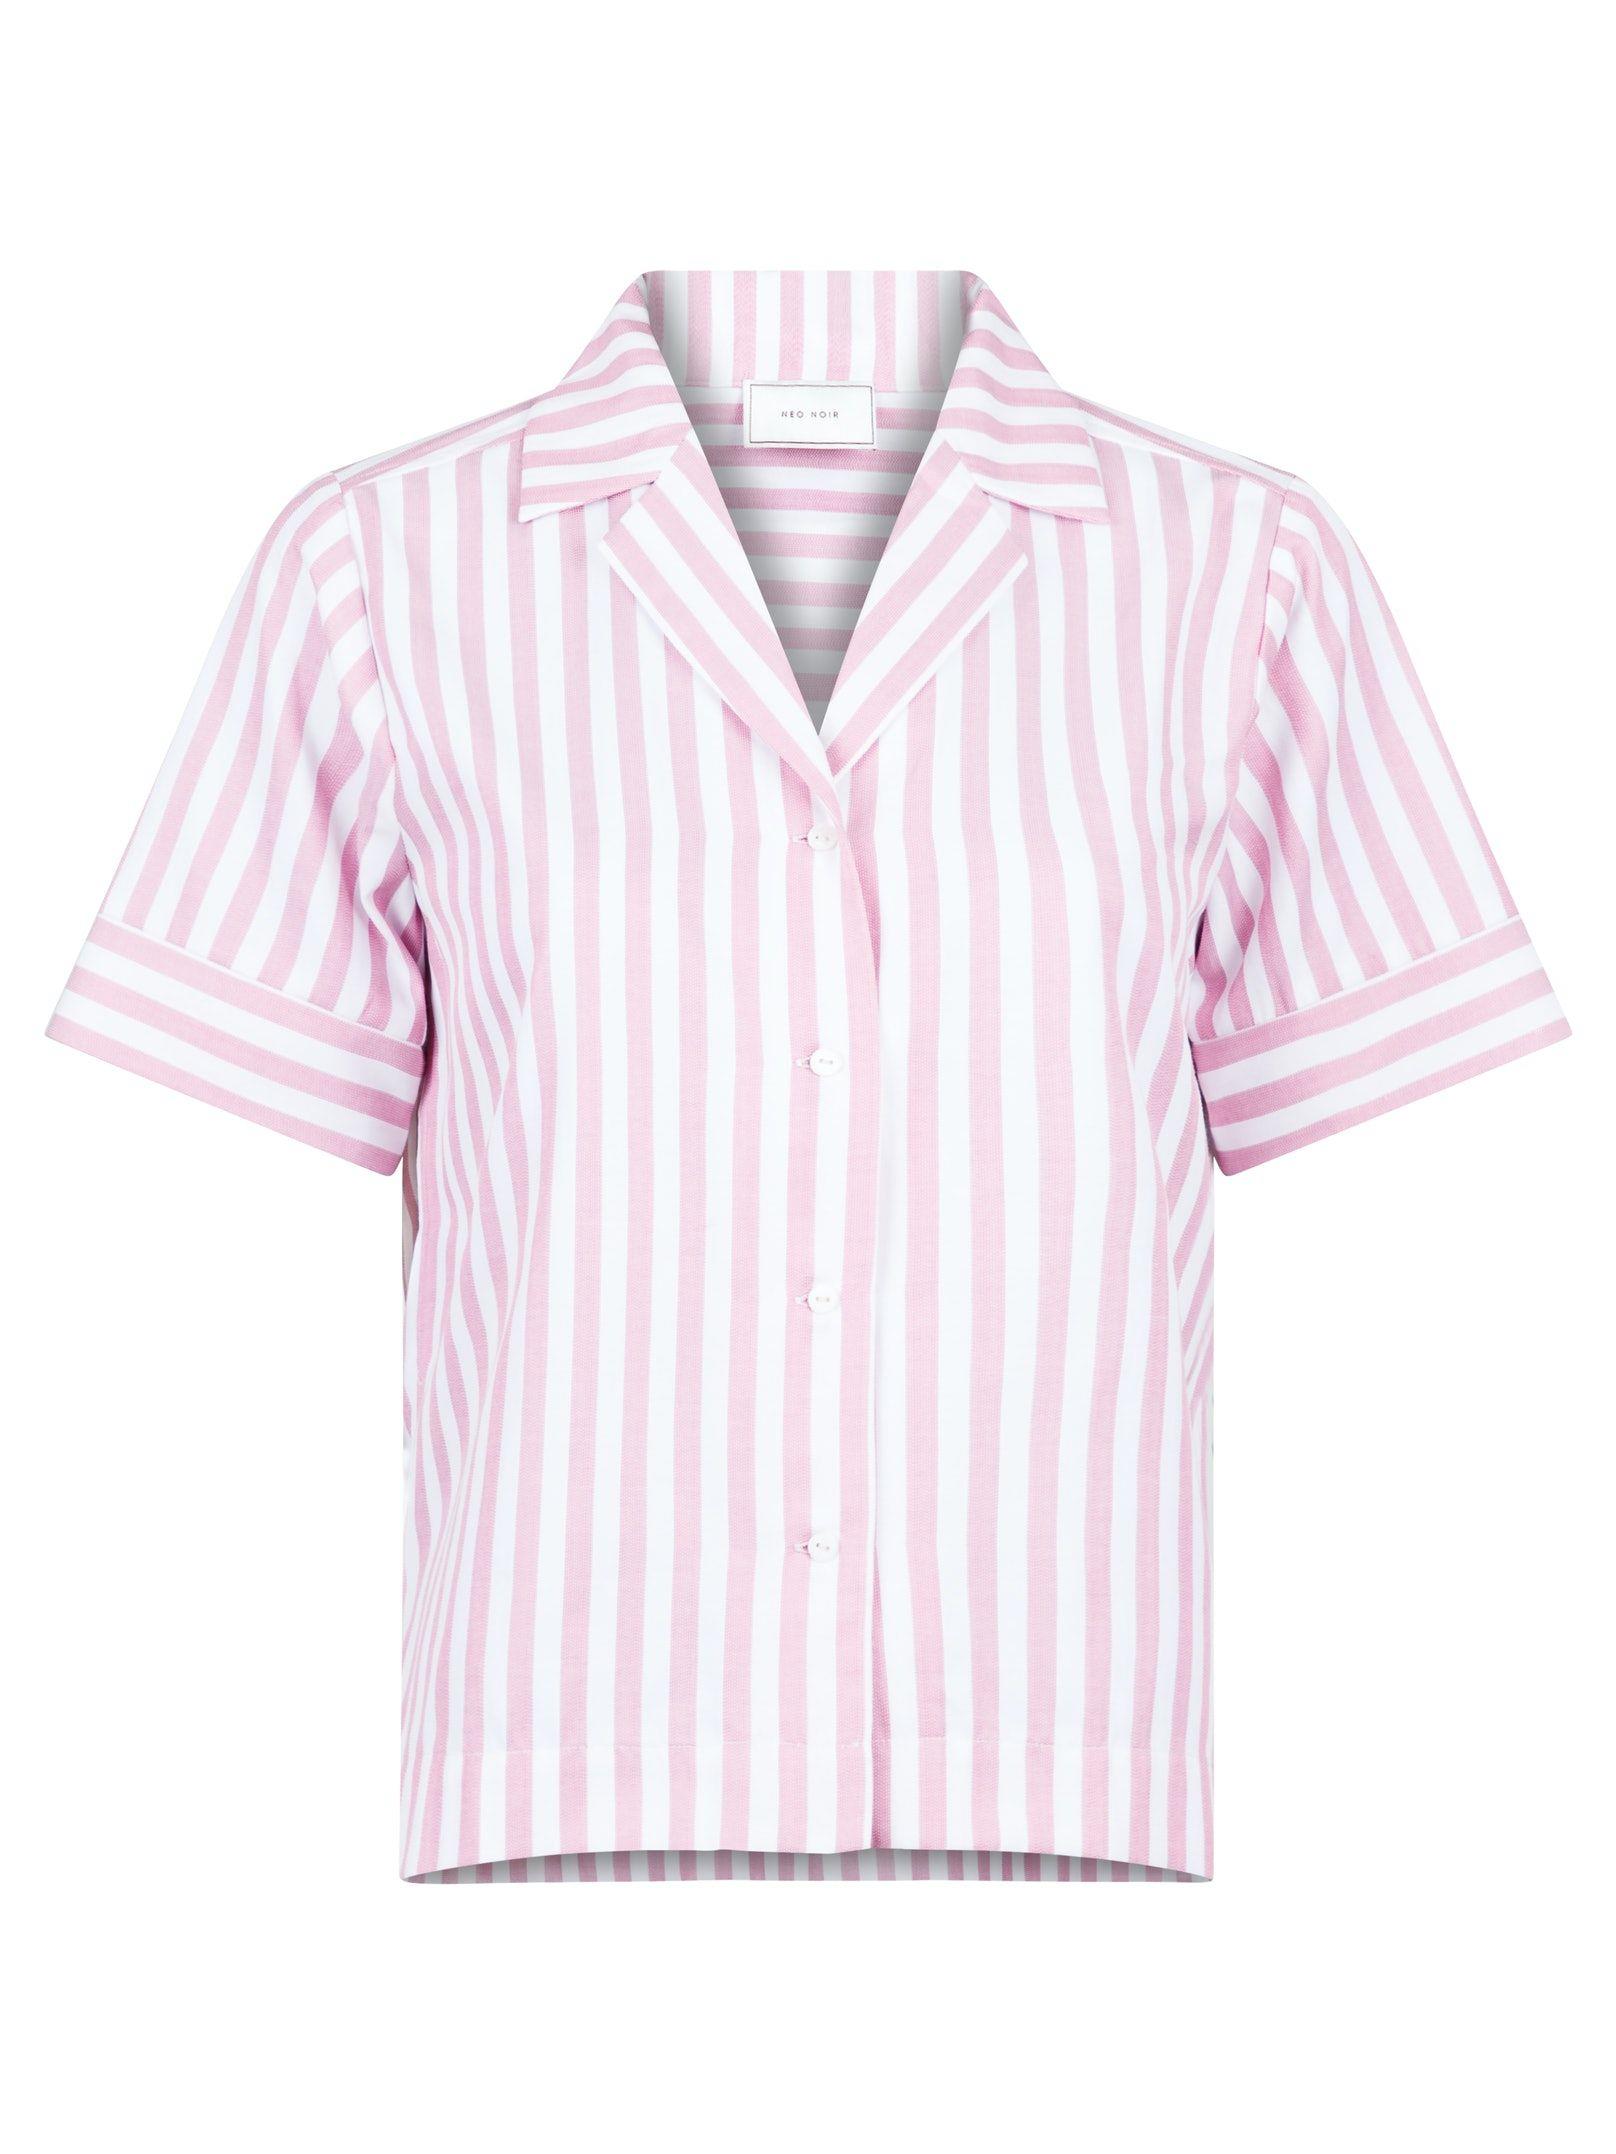 Neo Noir - Stripe Shirt Light Pink